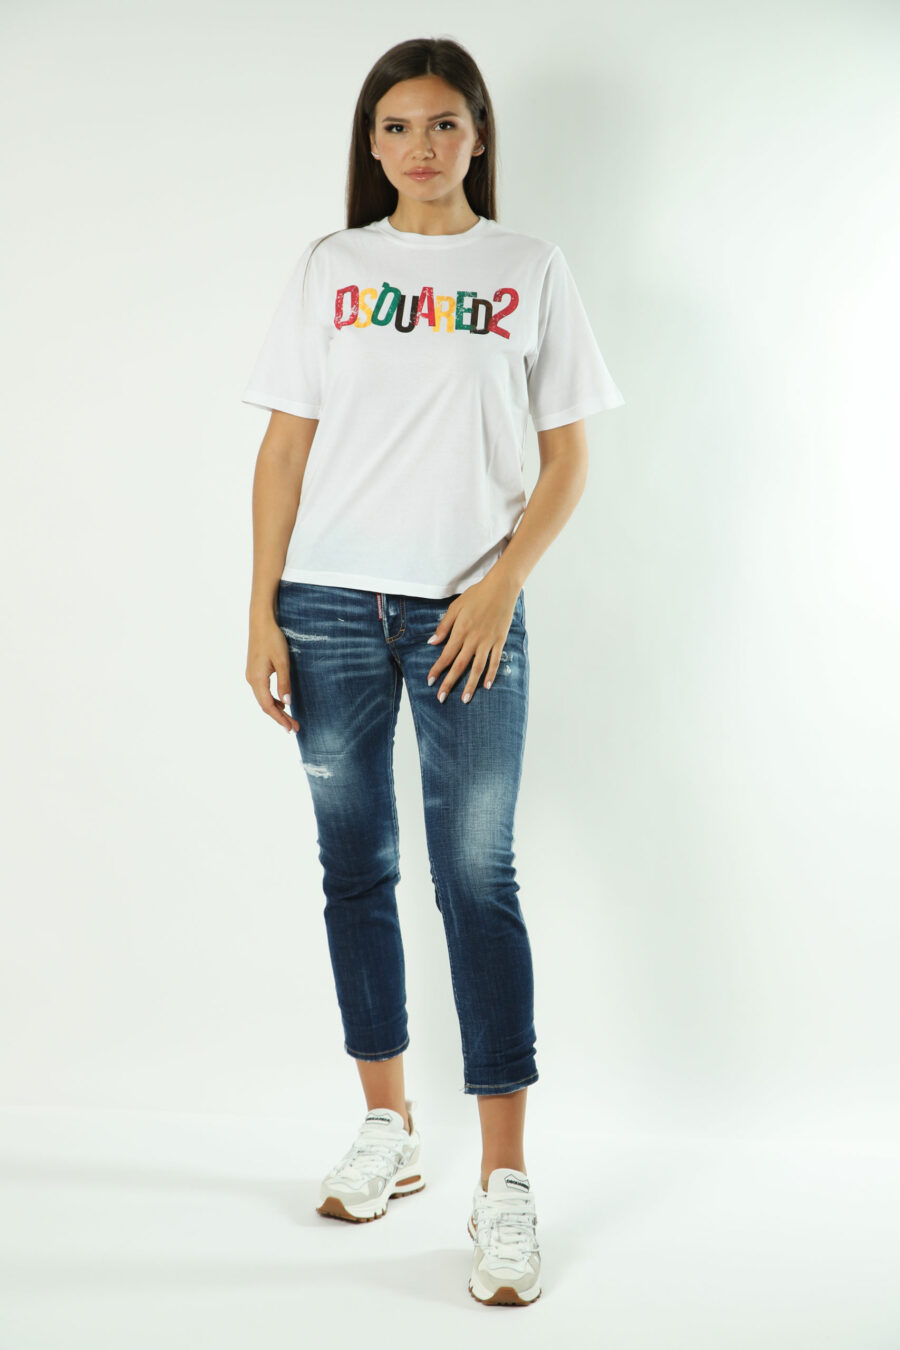 T-shirt branca com maxilogo multicolorido - Fotos 1620